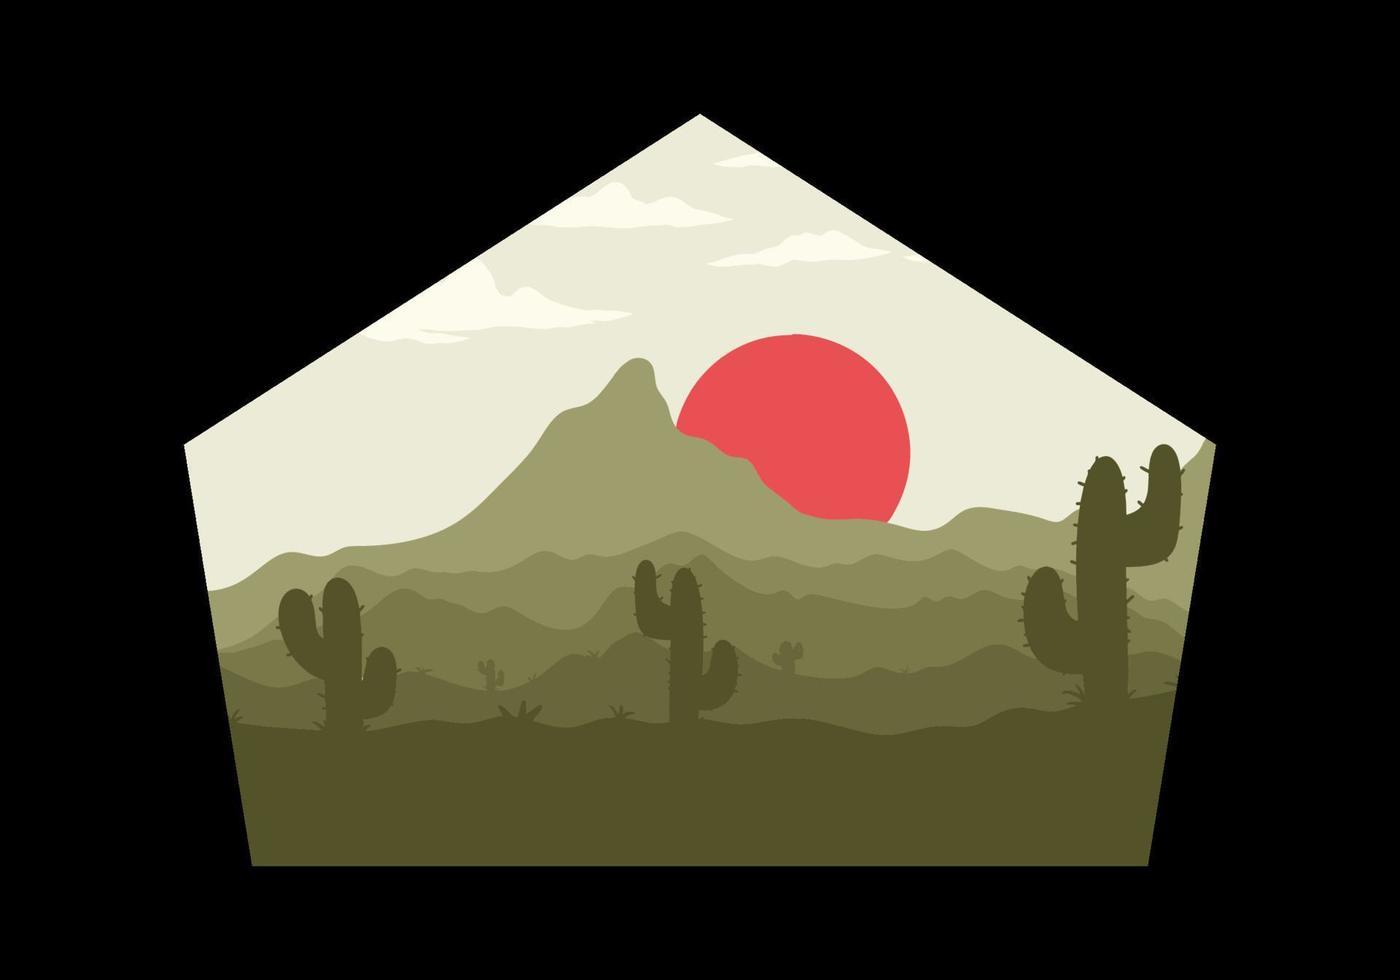 kleurrijk woestijn landschap met cactus bomen illustratie vector